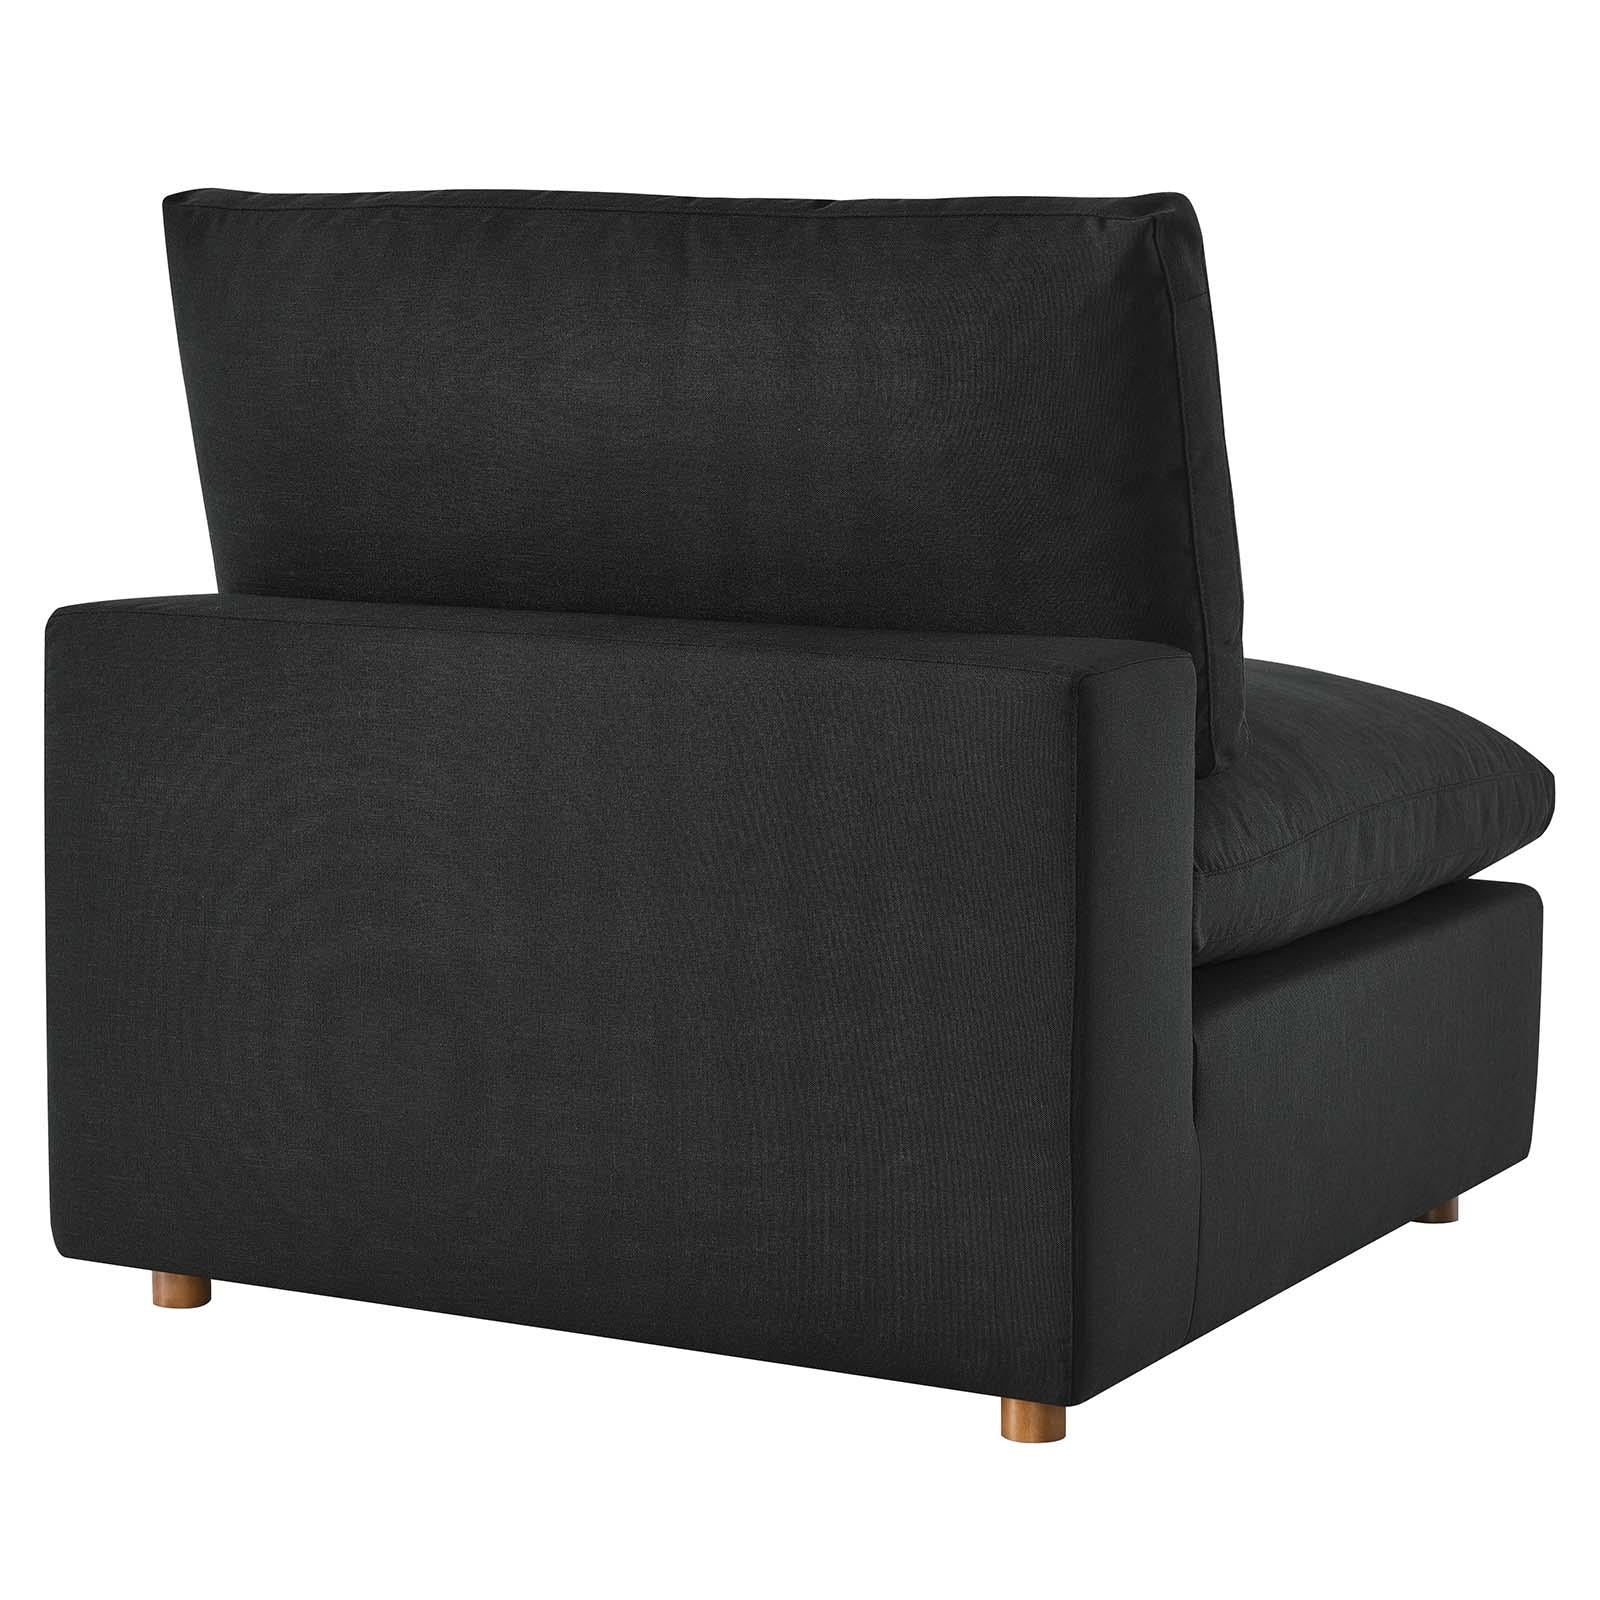 Modway Furniture Modern Commix Down Filled Overstuffed 5 Piece Sectional Sofa Set - EEI-3358